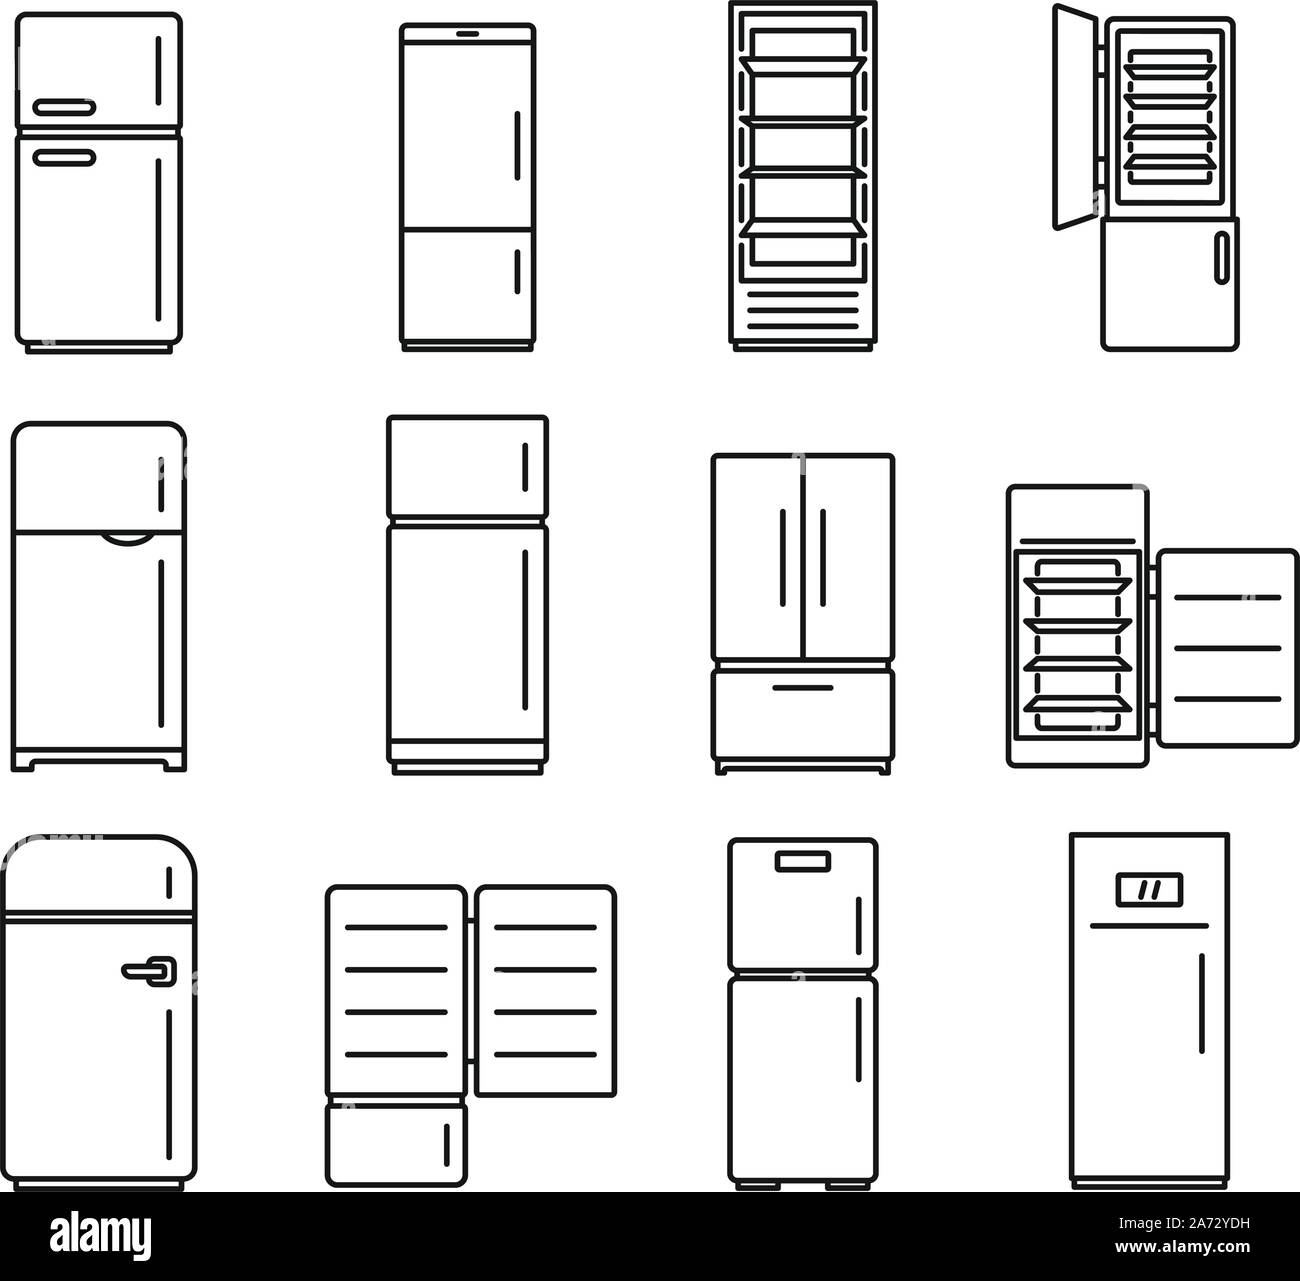 Modern fridge icons set. Outline set of modern fridge vector icons for web design isolated on white background Stock Vector